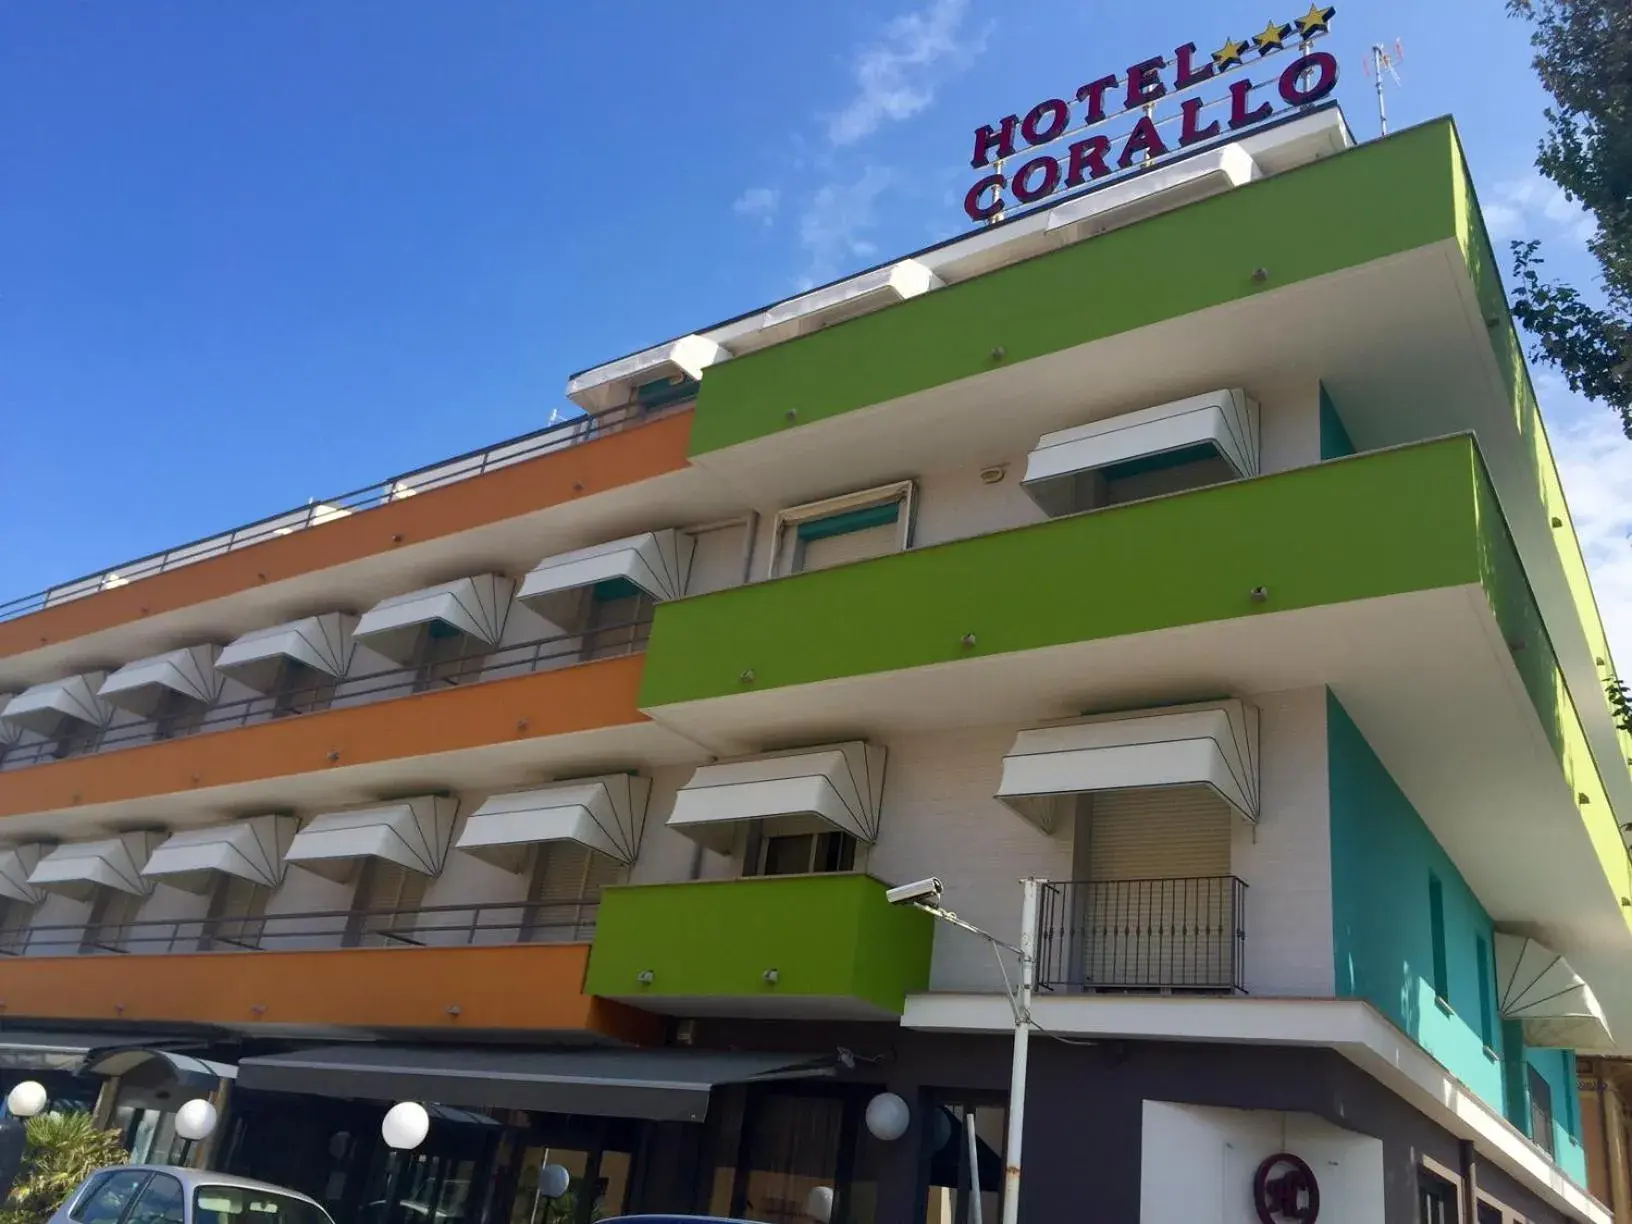 Facade/Entrance in Hotel Corallo